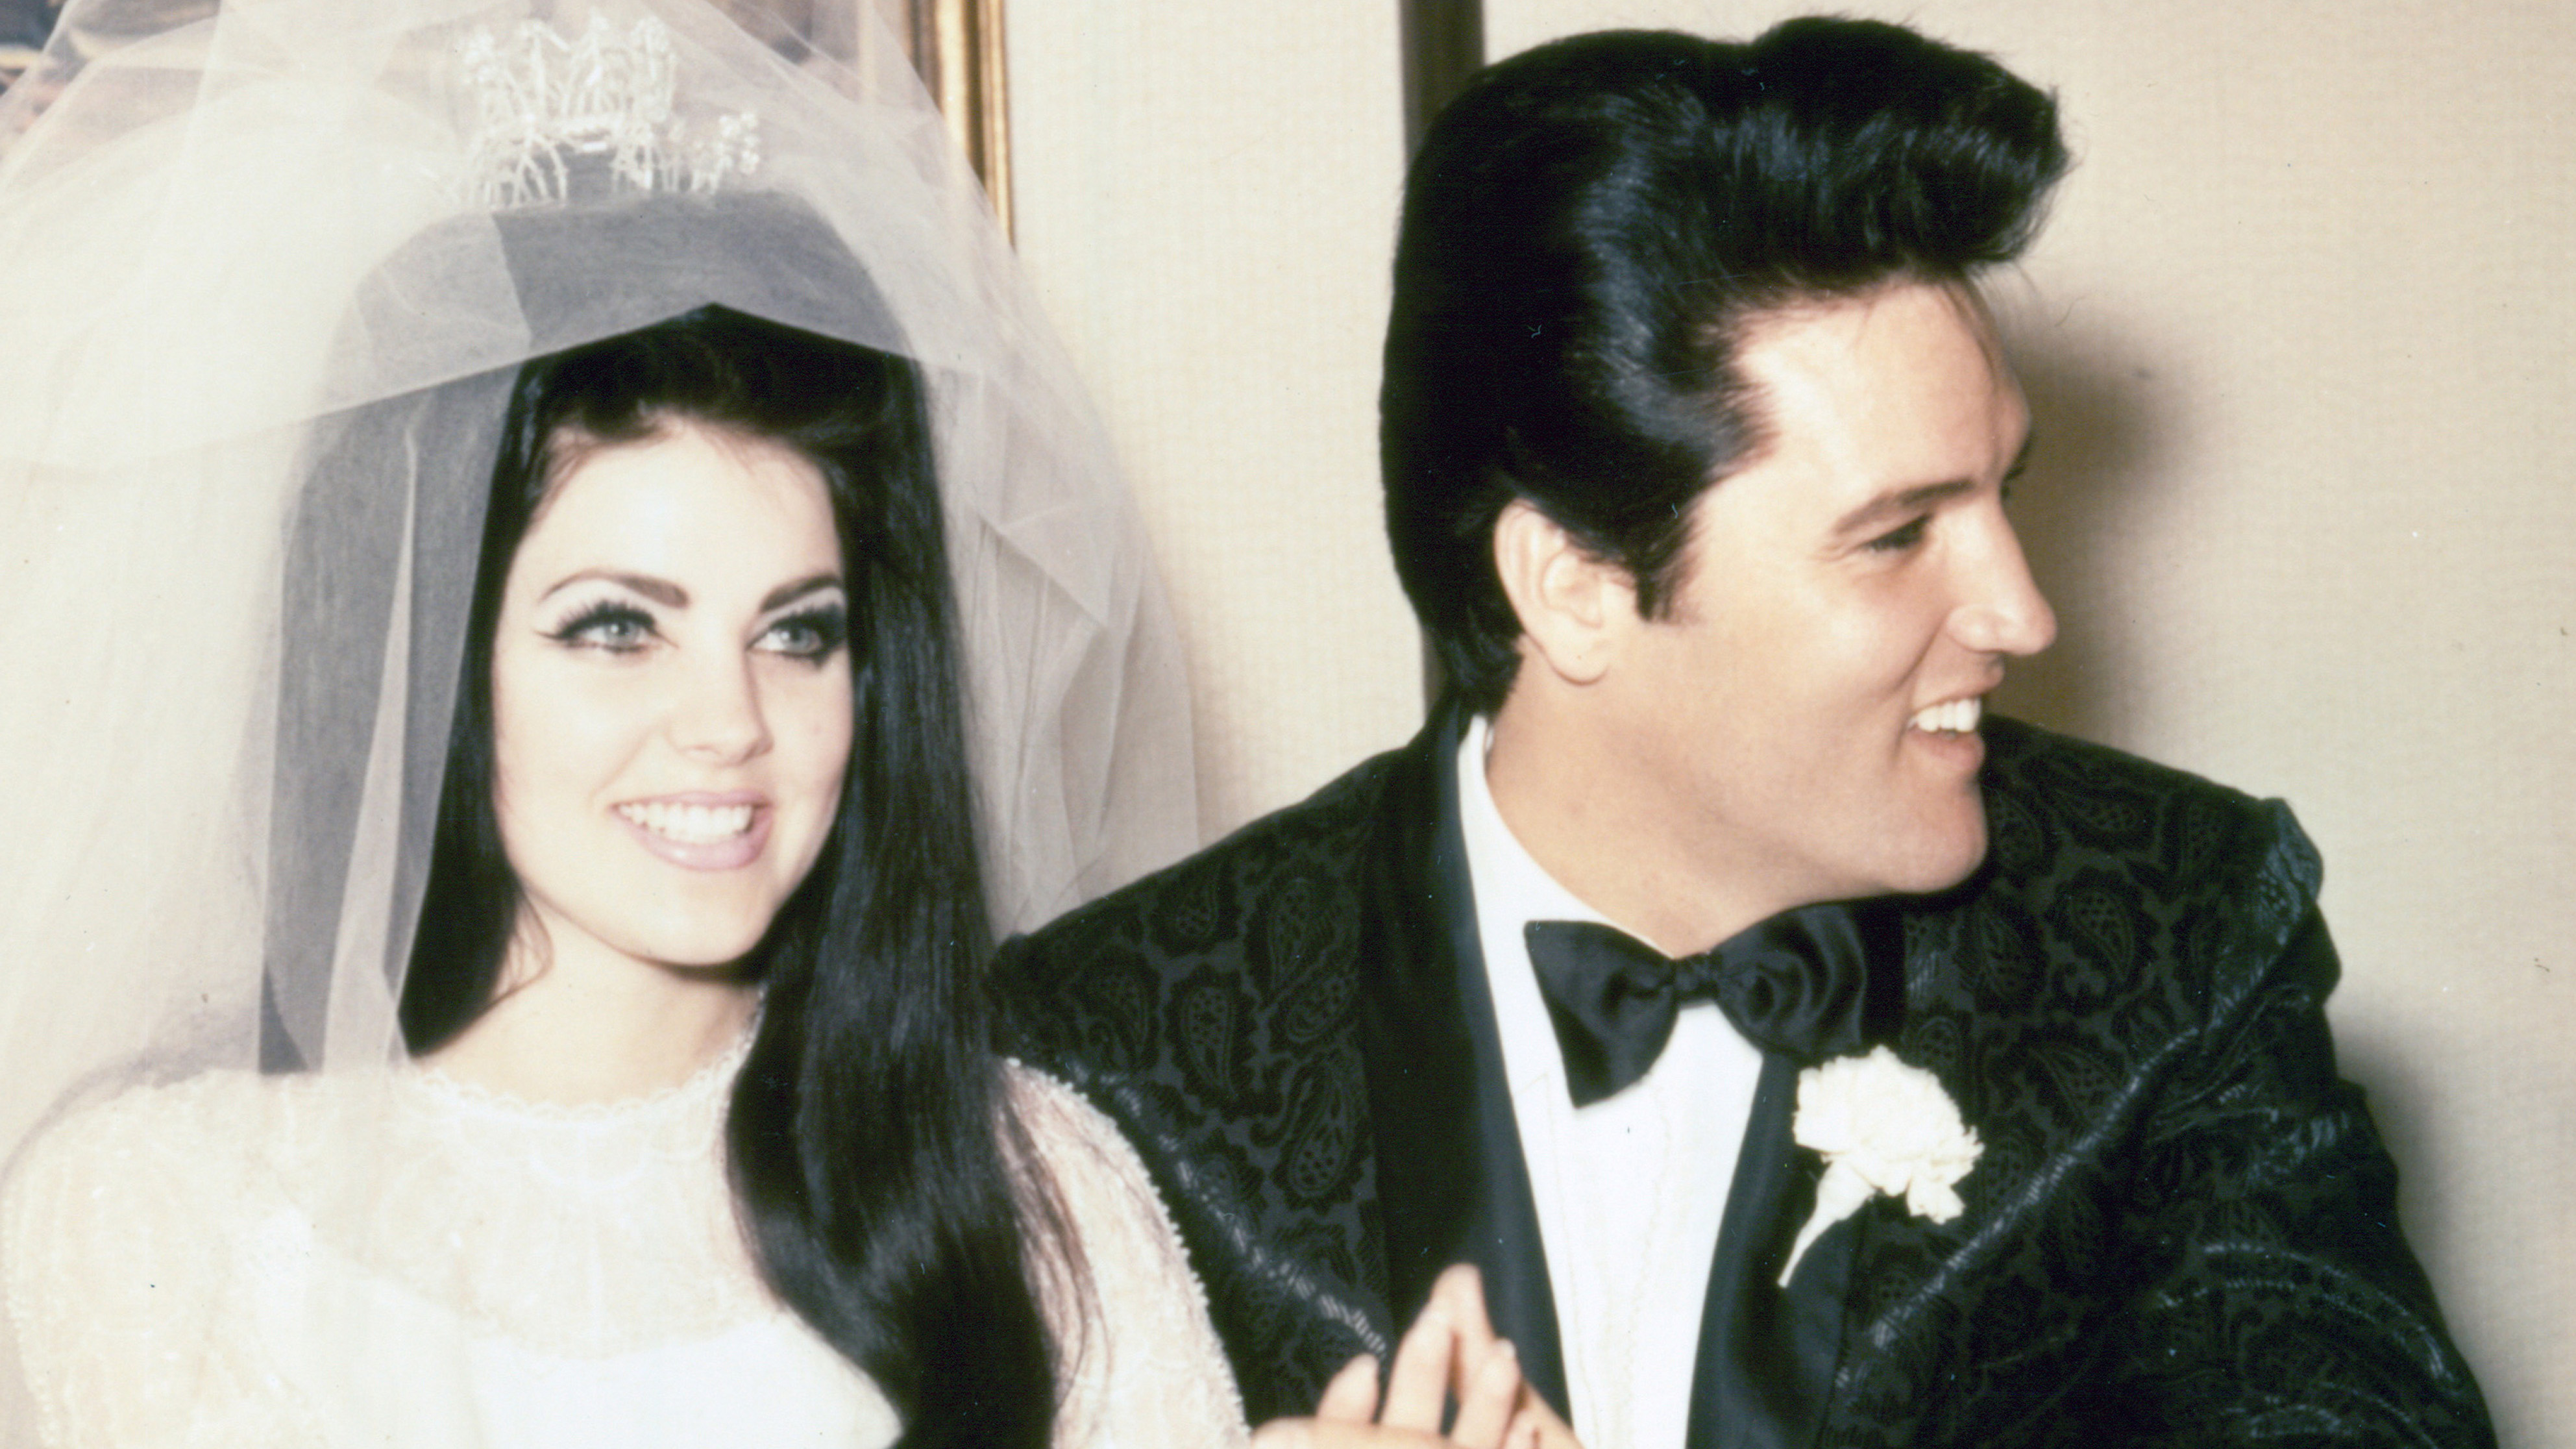 When Did Elvis and Priscilla Start Dating? - ChadMusser